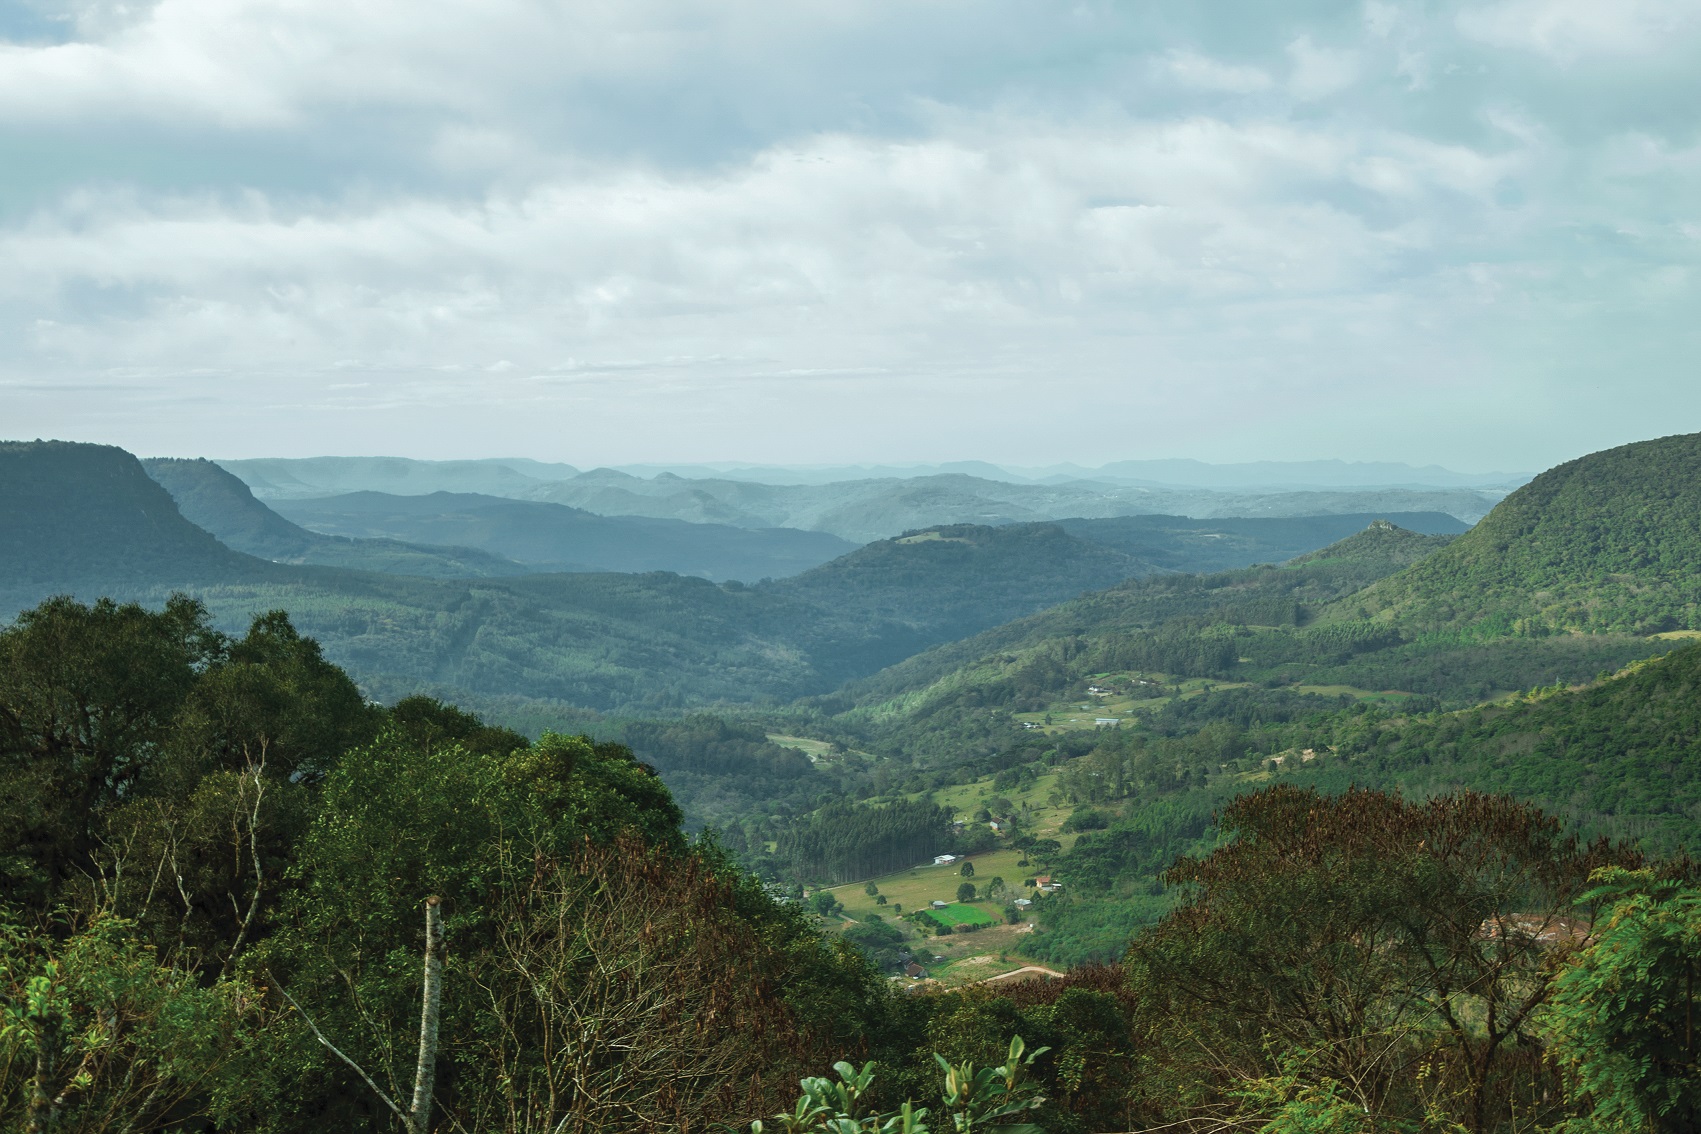 Vista do Vale do Quilombo no Belvedere, morros verdes se estendem até o horizonte, nuvens escuras cobrem o céu mas o dia está bem iluminado casas e construções aparecem espalhadas pontualmente pelos morros